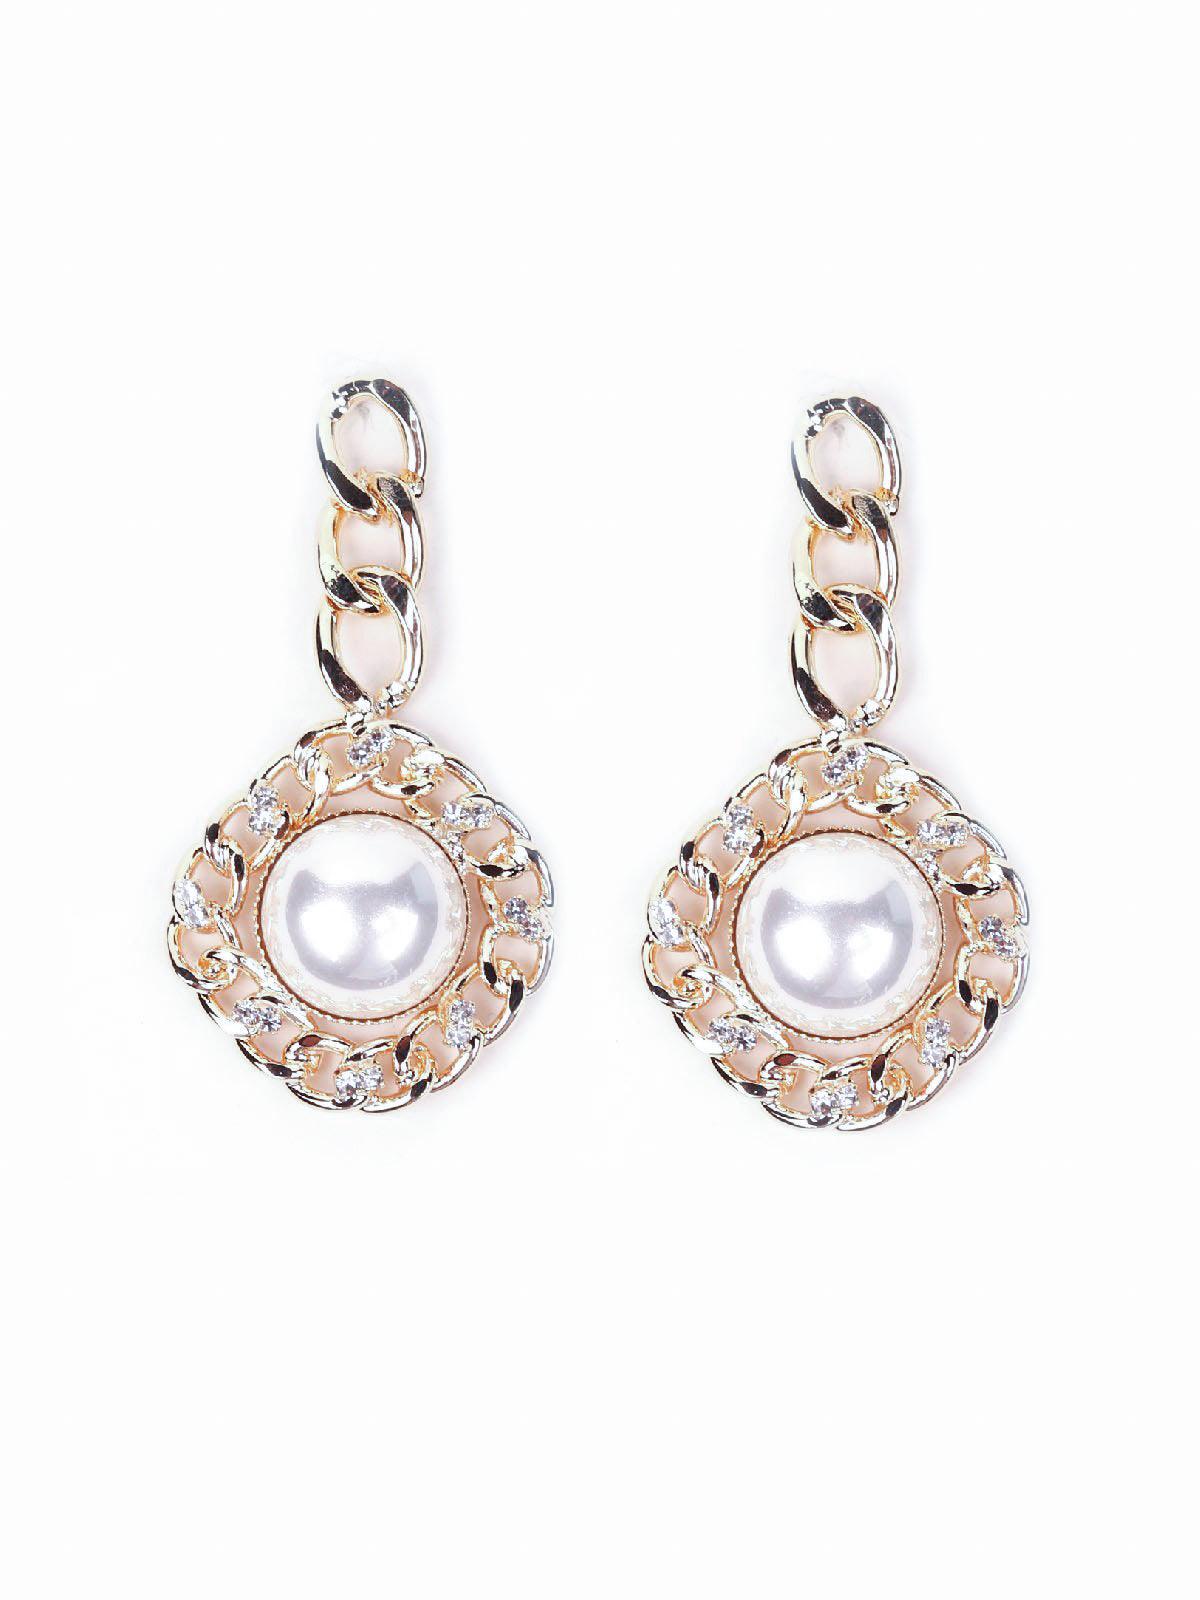 Women's Gold Chain Dropped Pearl Studded Earrings - Odette